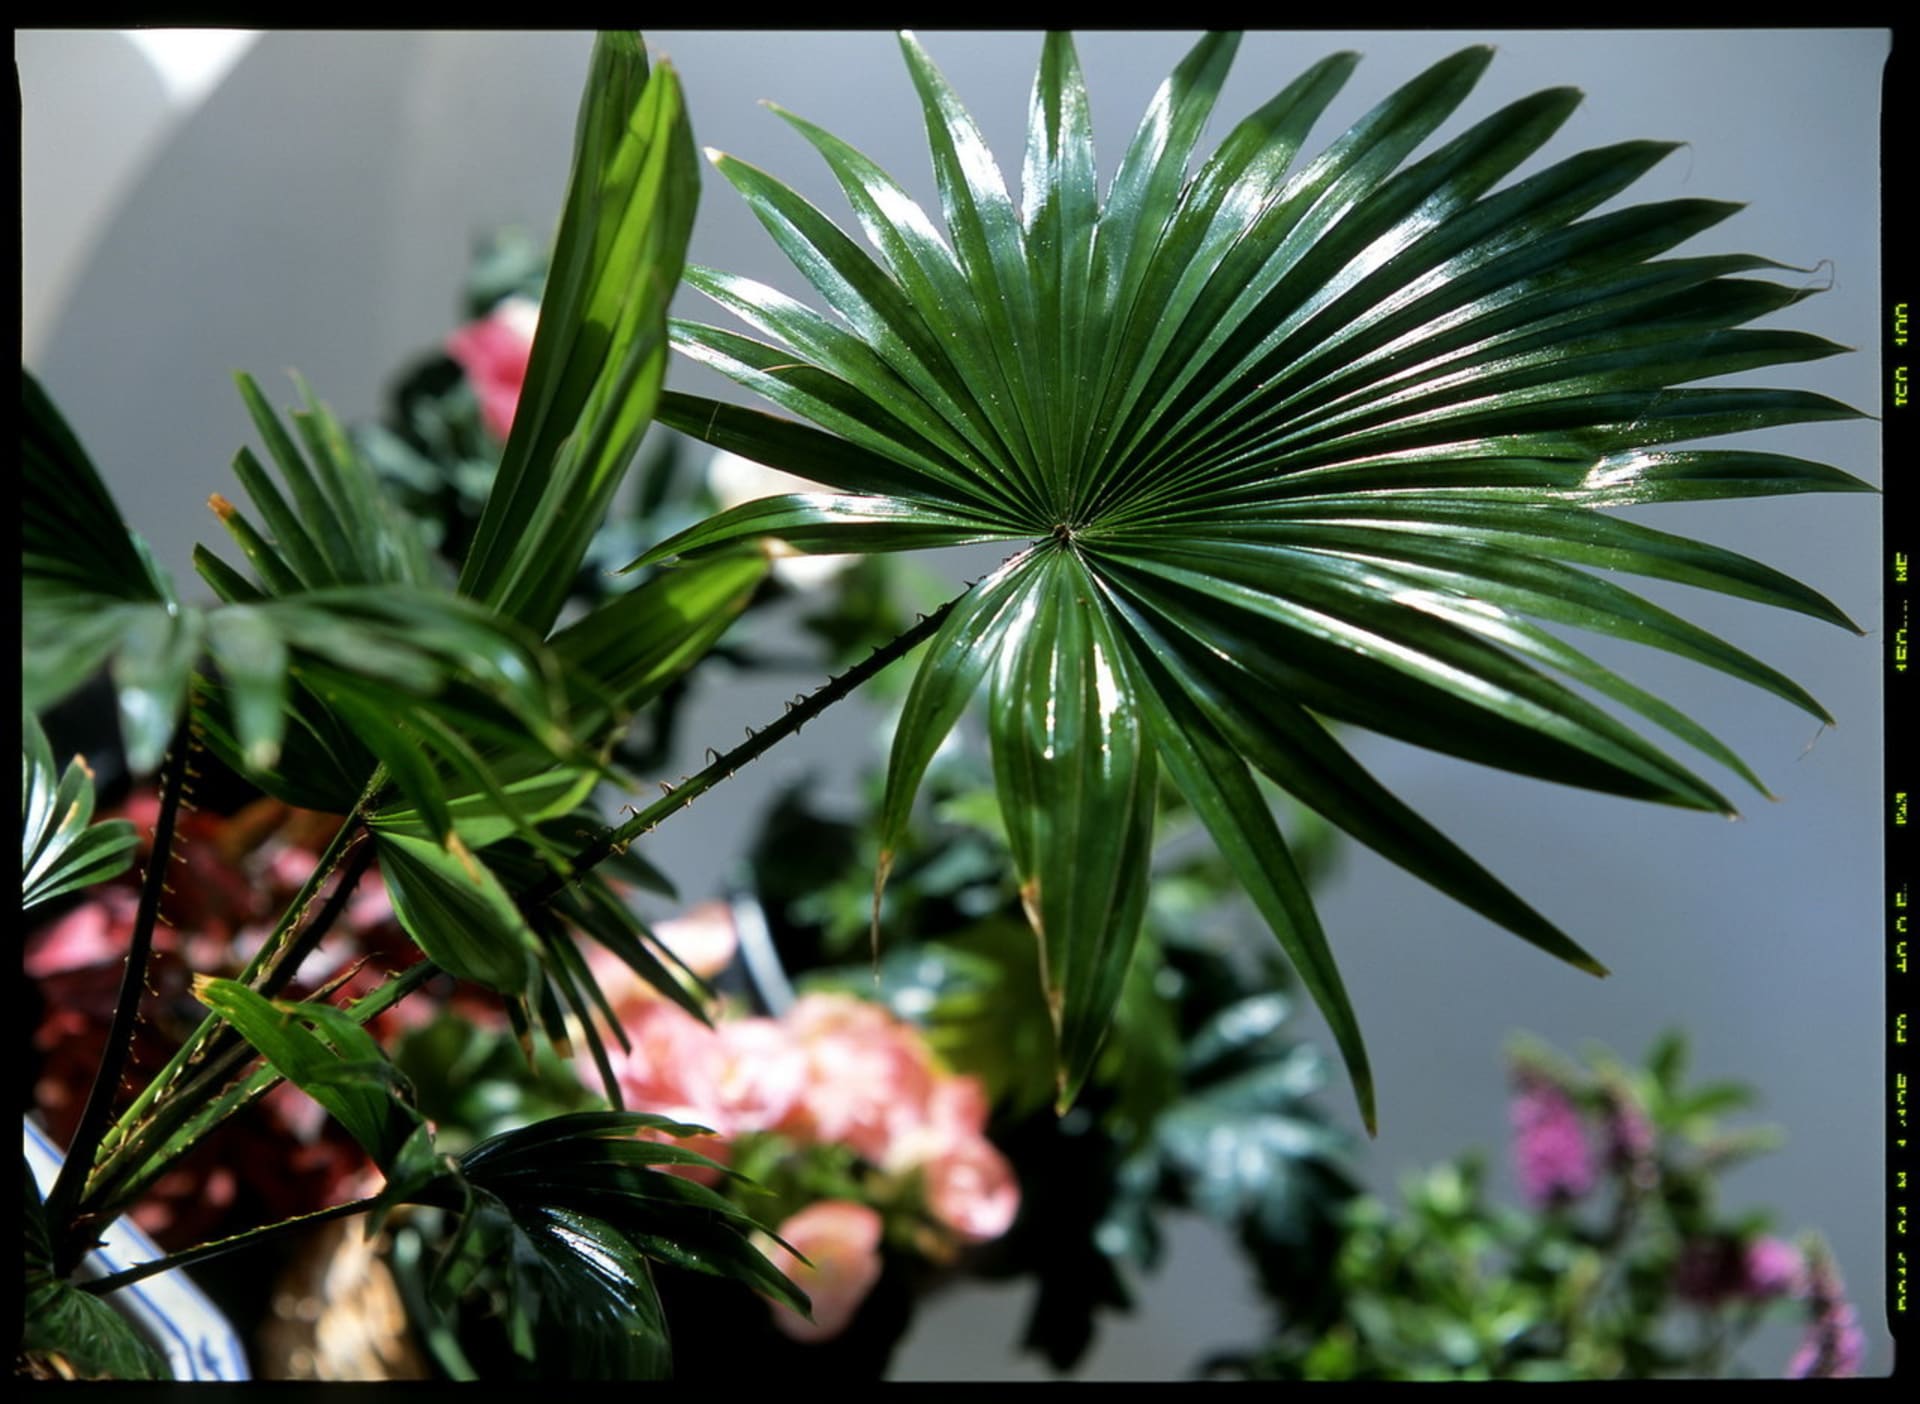 Livistonie/Livistona rotundifolia Queen Palm - detail